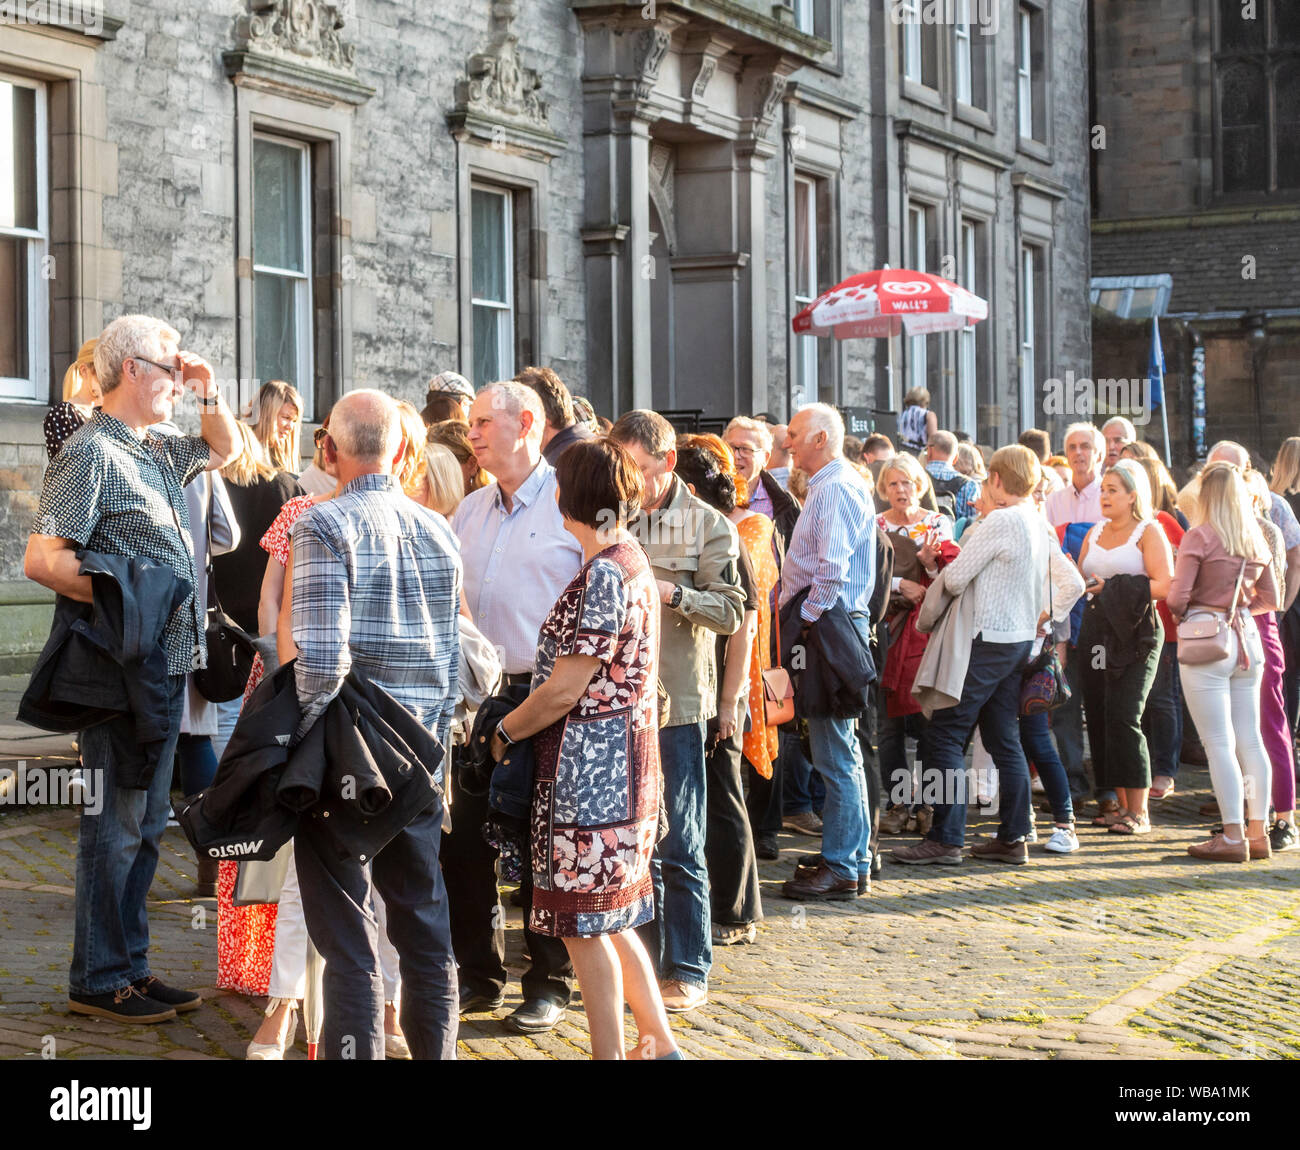 Une foule de personnes faisant la queue pour entrer dans un Show Fringe sur la butte, Édimbourg. Lieu du Festival Fringe d'Édimbourg. Soirée ensoleillée. Banque D'Images